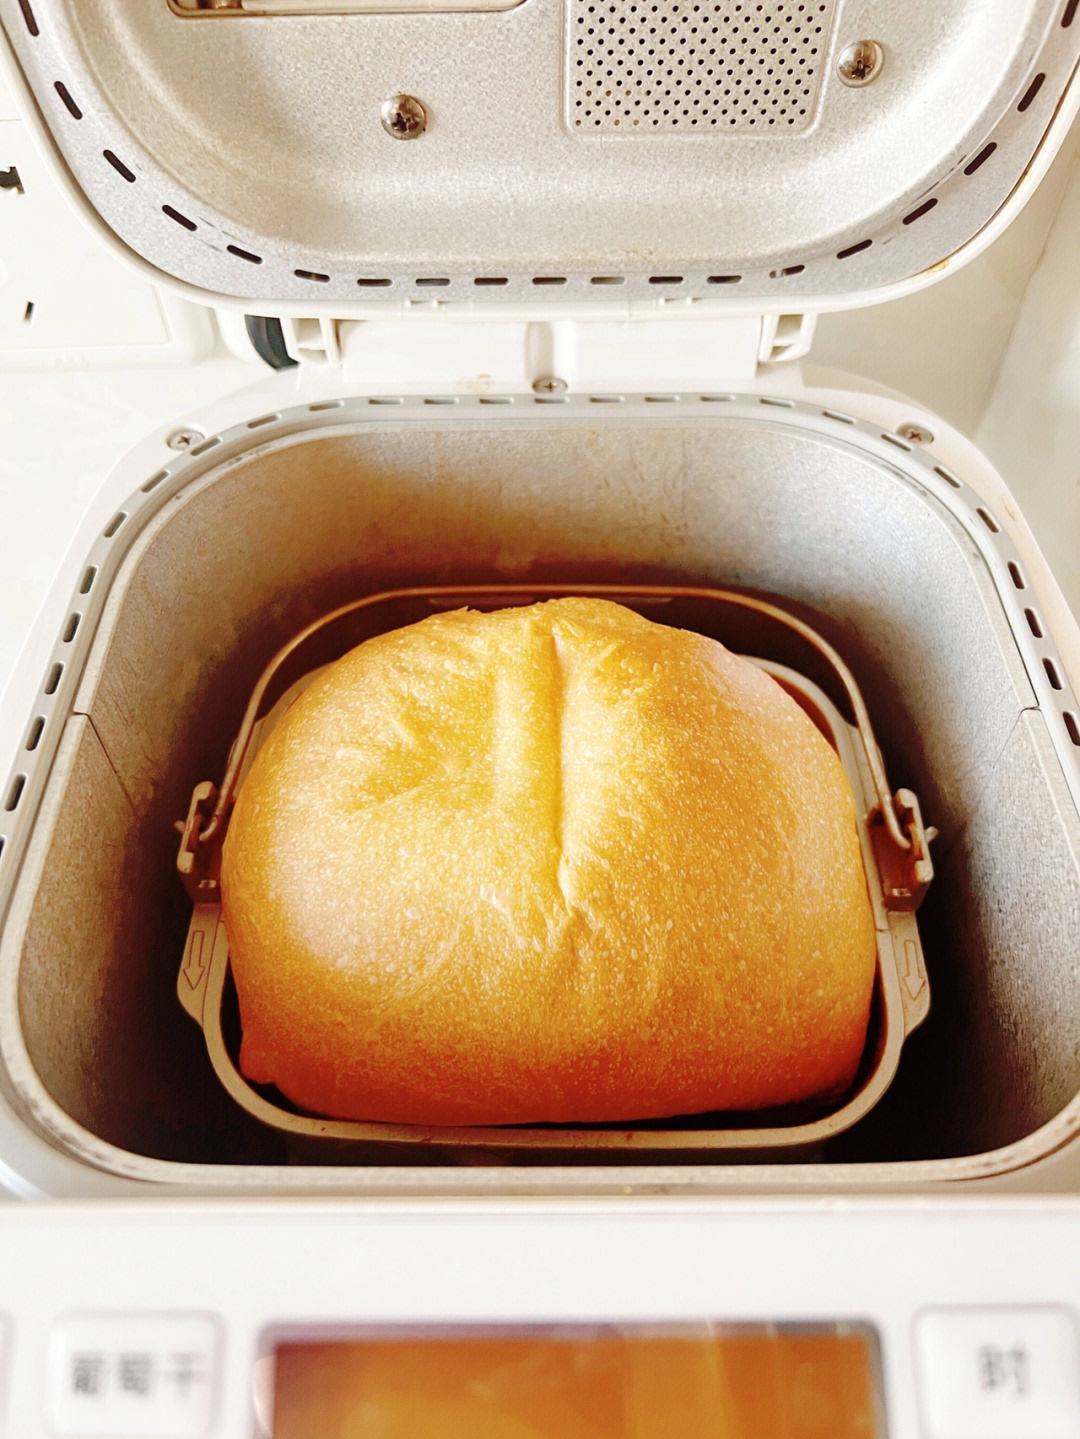 松下面包机软式面包图片